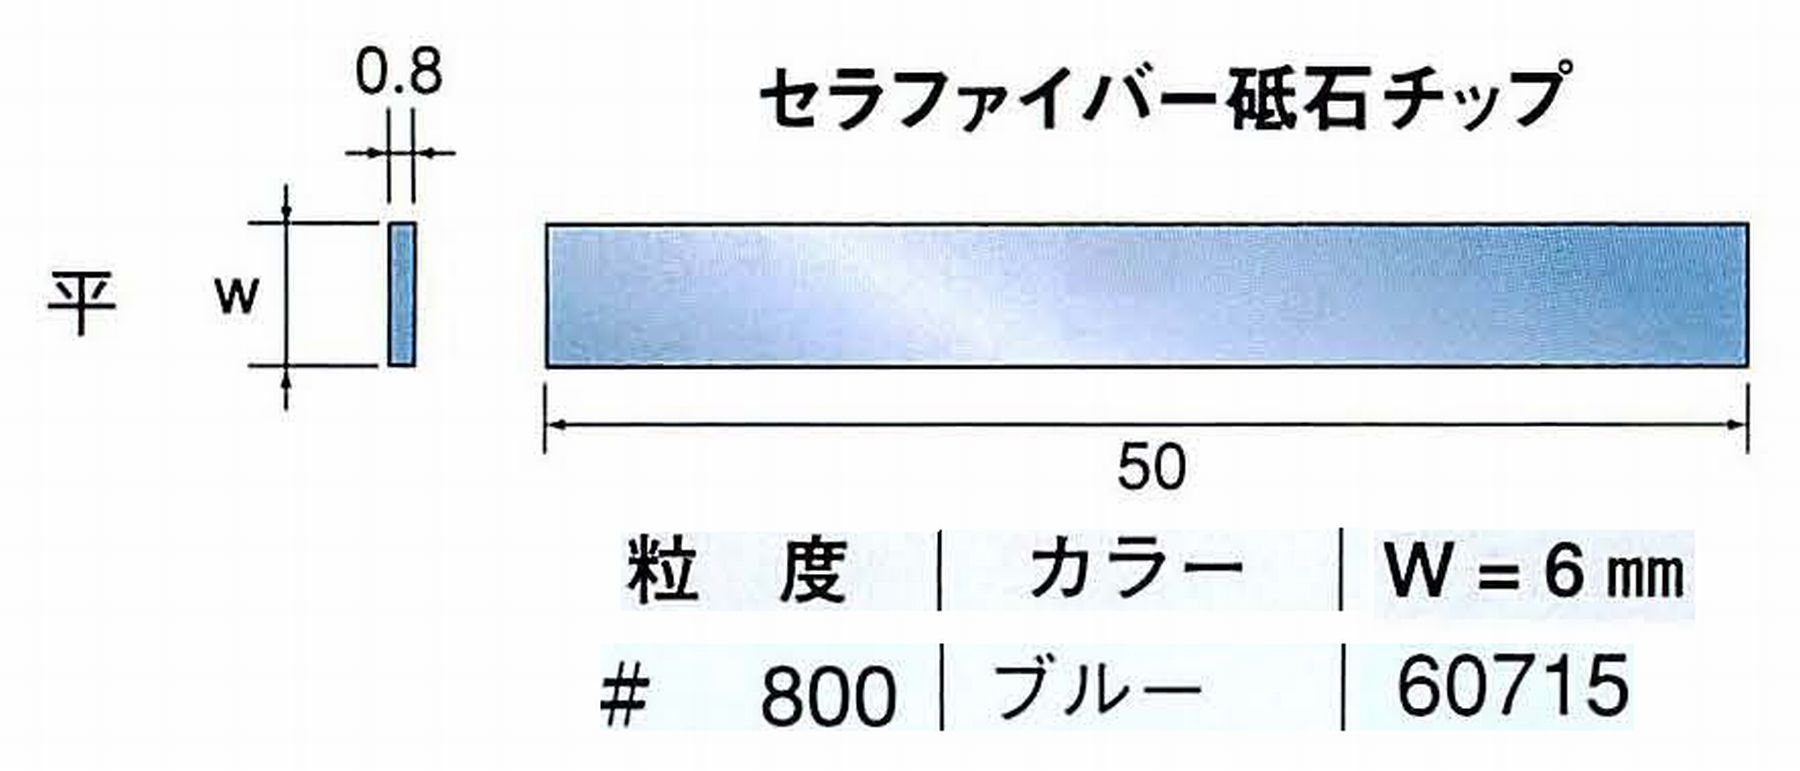 ナカニシ/NAKANISHI 超音波研磨装置 シーナスneo/シーナス専用工具 セラファイバー砥石チップ 平 60715